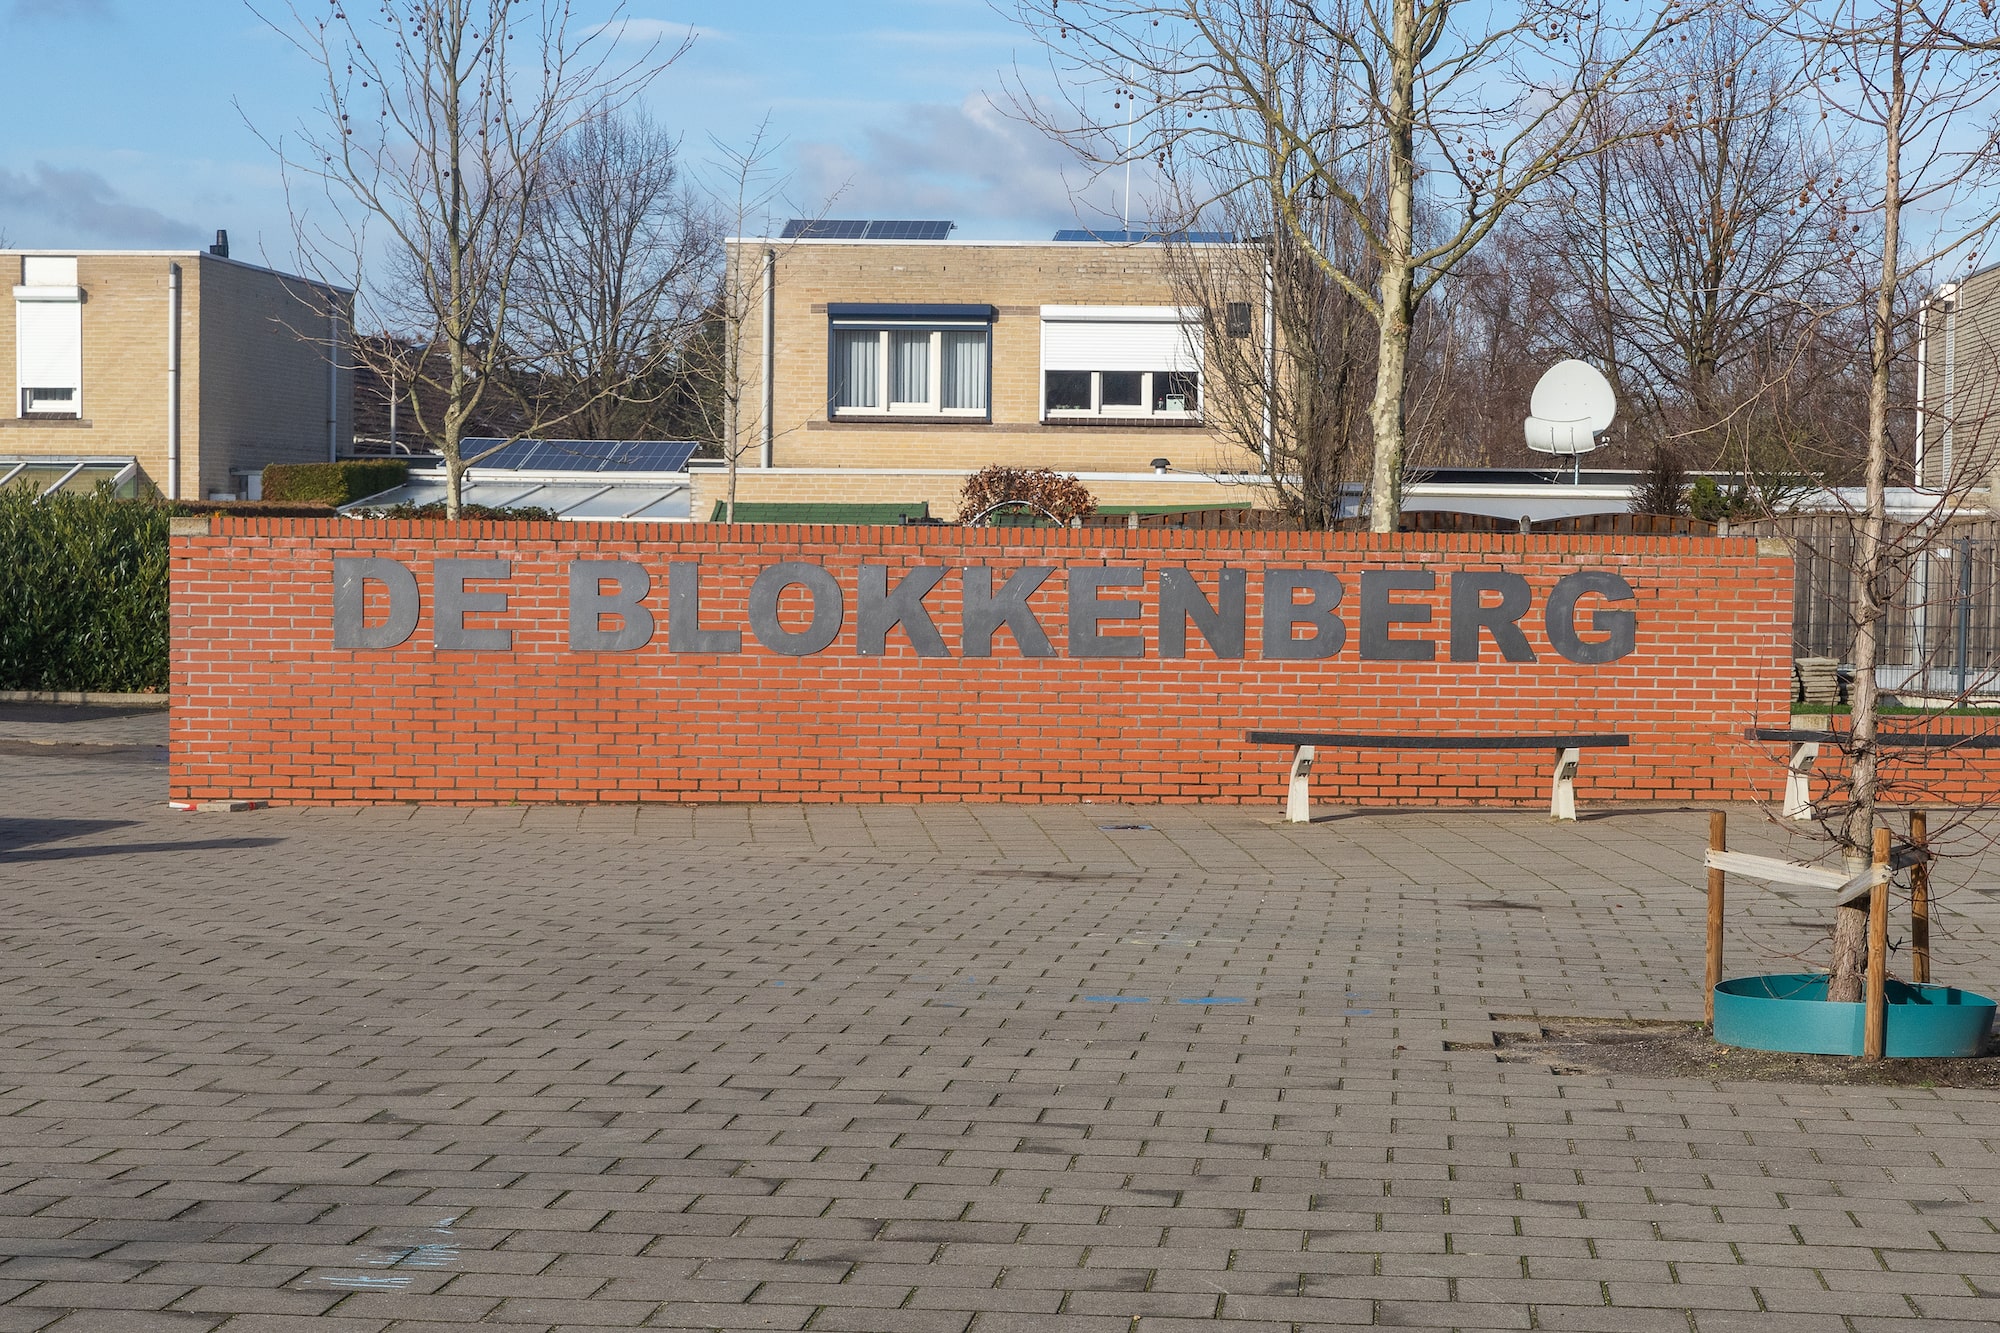 (c) Bsdeblokkenberg.nl